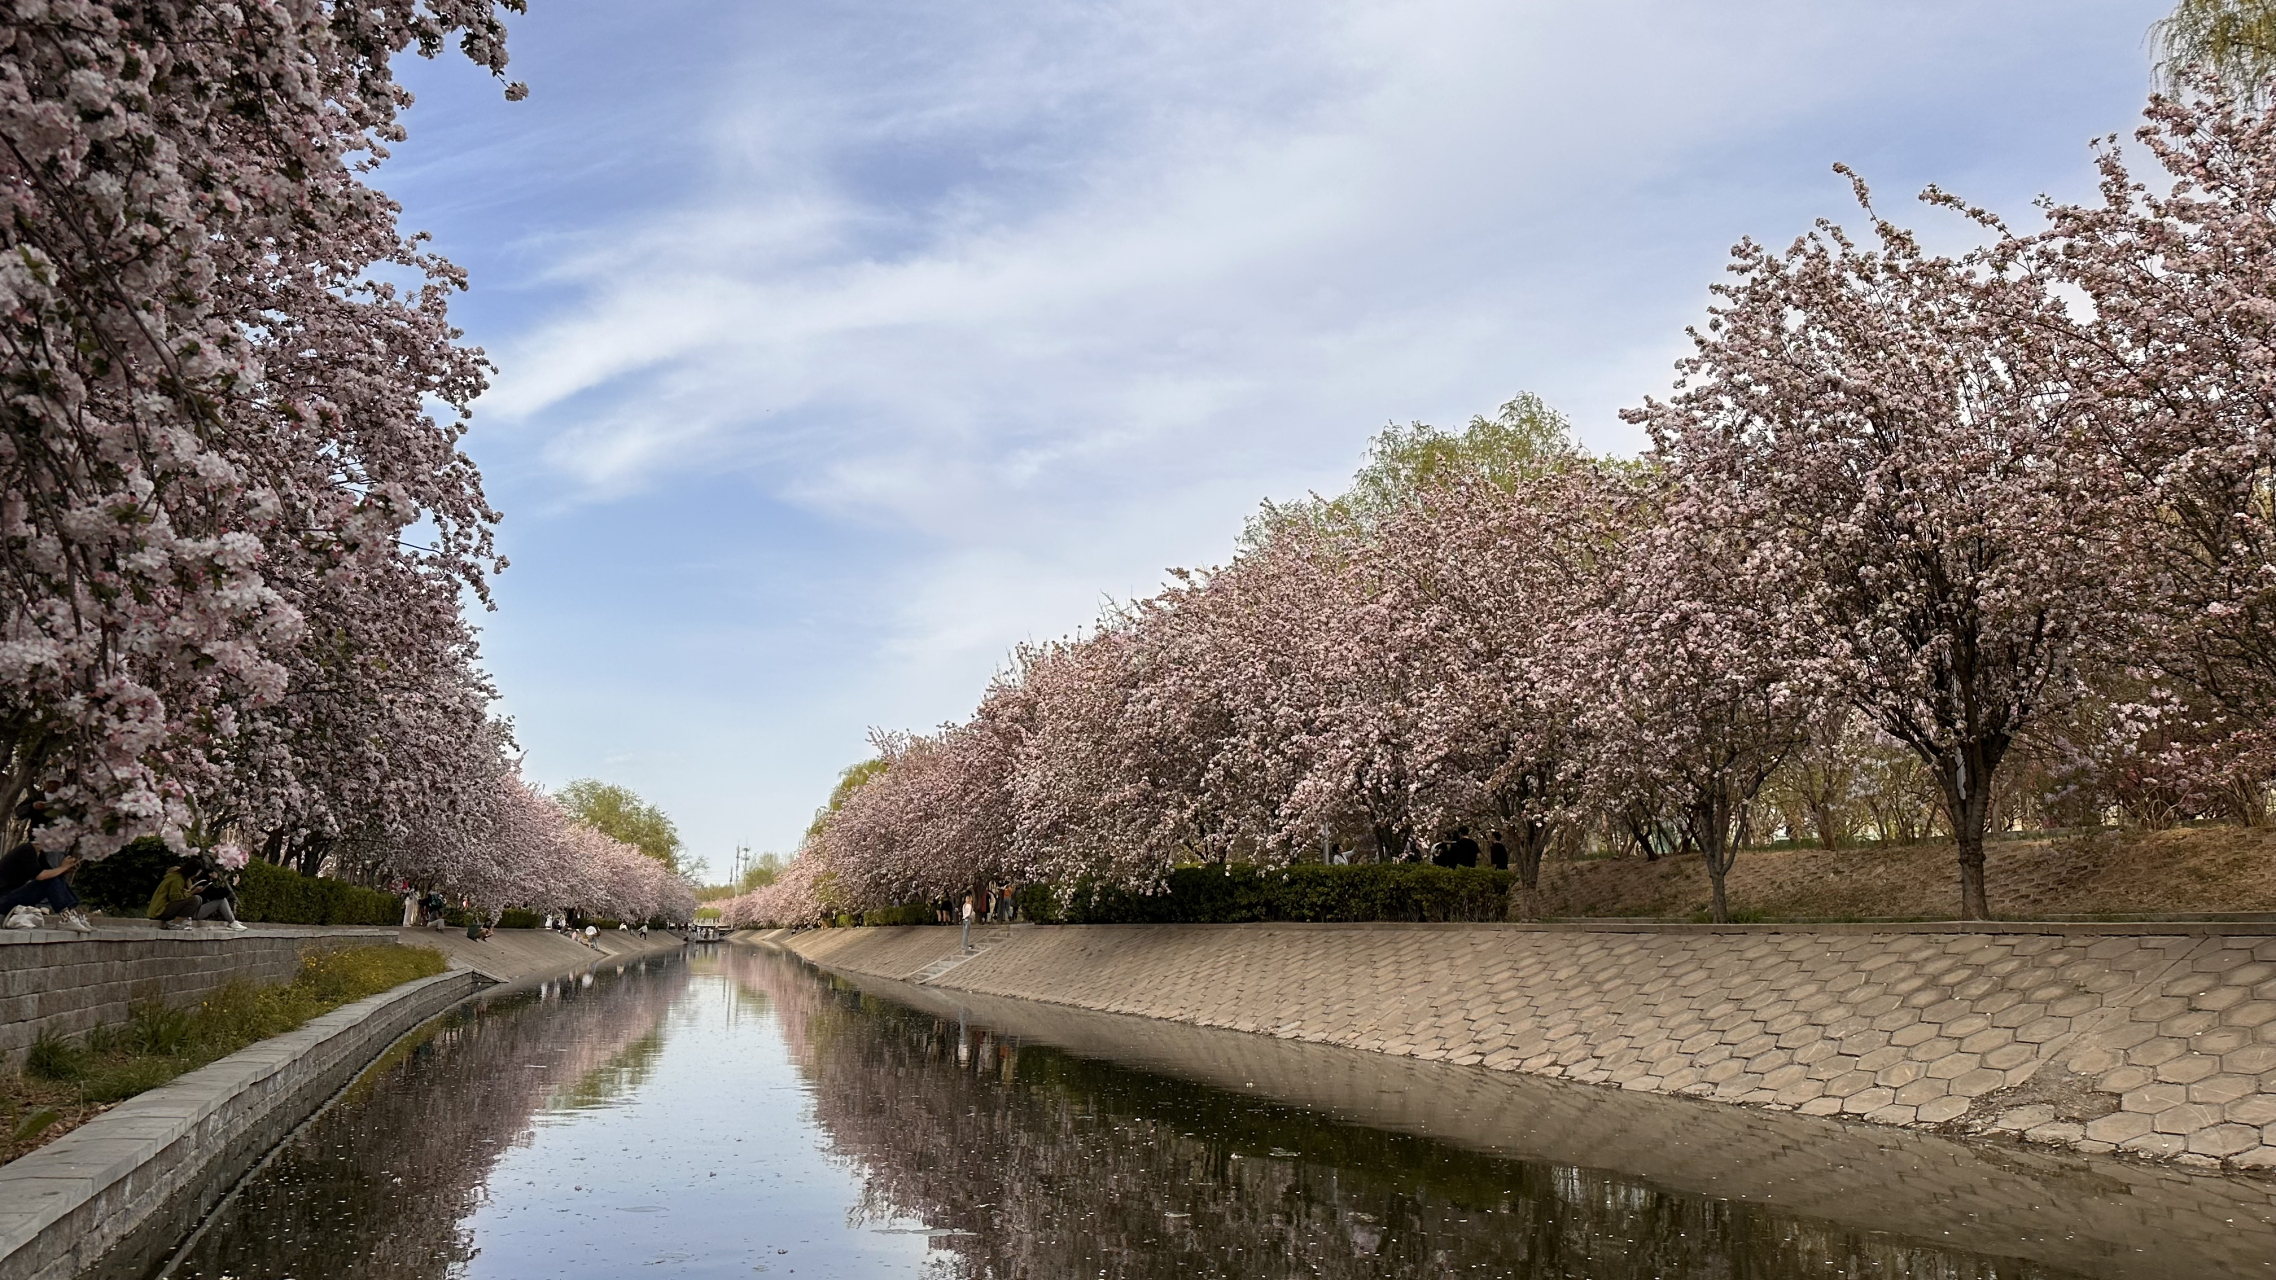 望京海棠花溪的西府海棠已经全部盛放,白里透红,香气四溢,沿着溪水